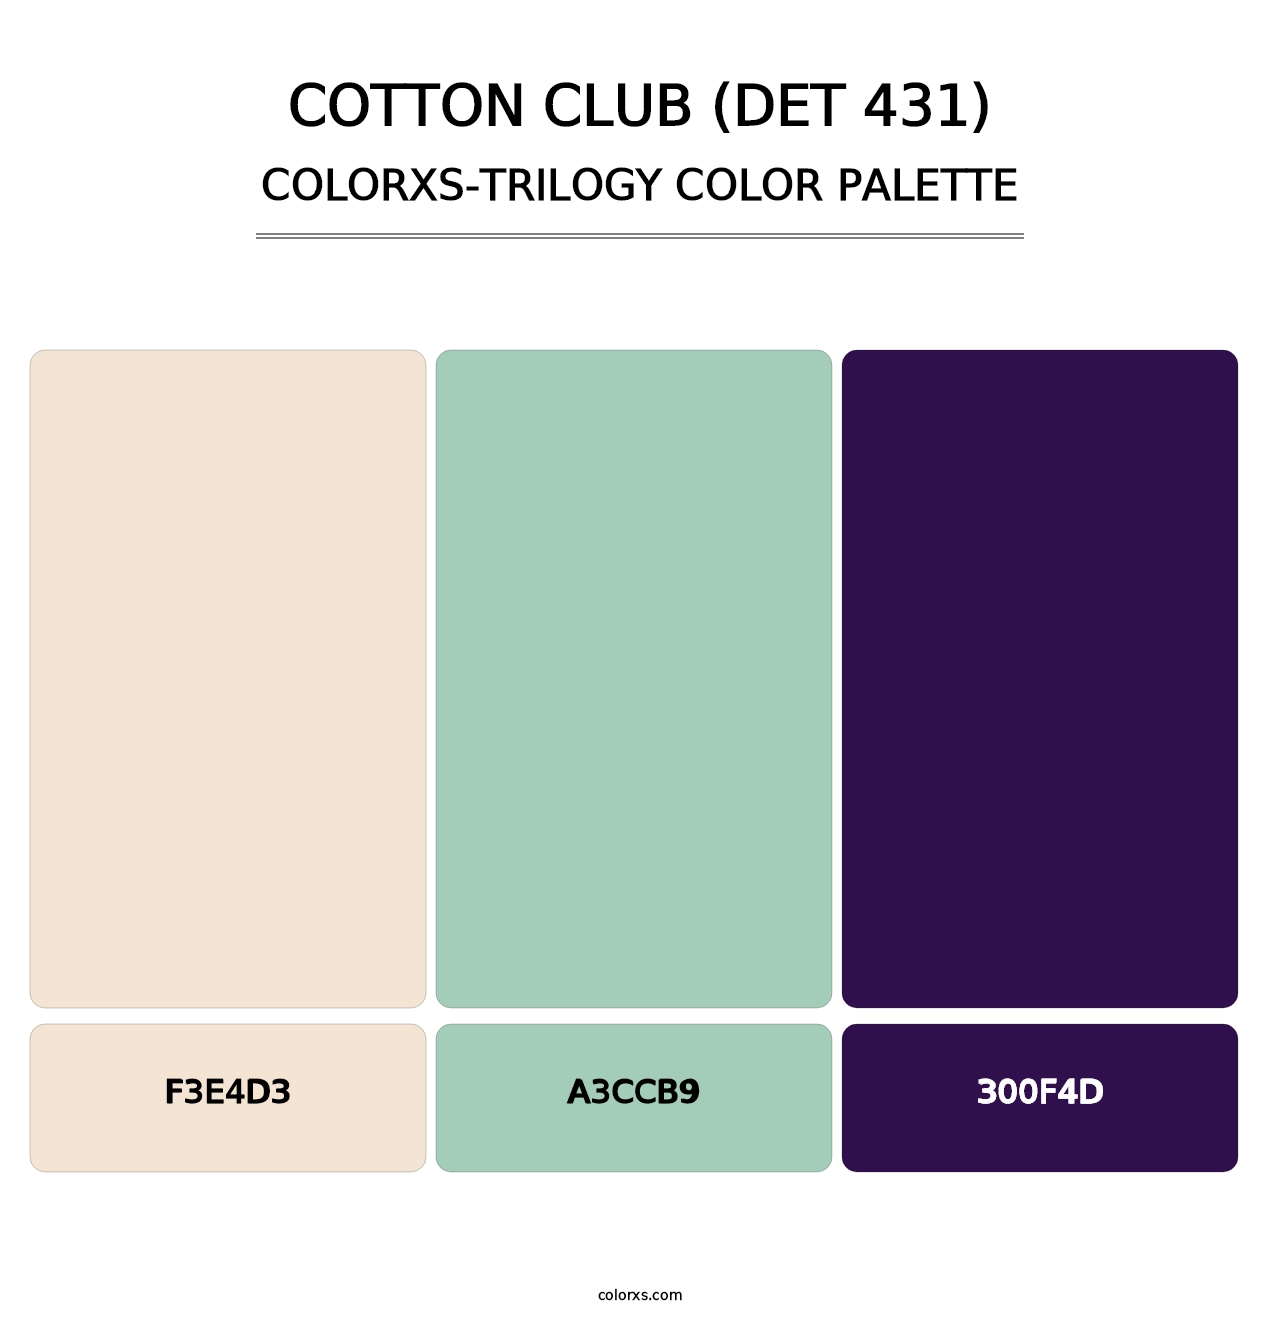 Cotton Club (DET 431) - Colorxs Trilogy Palette